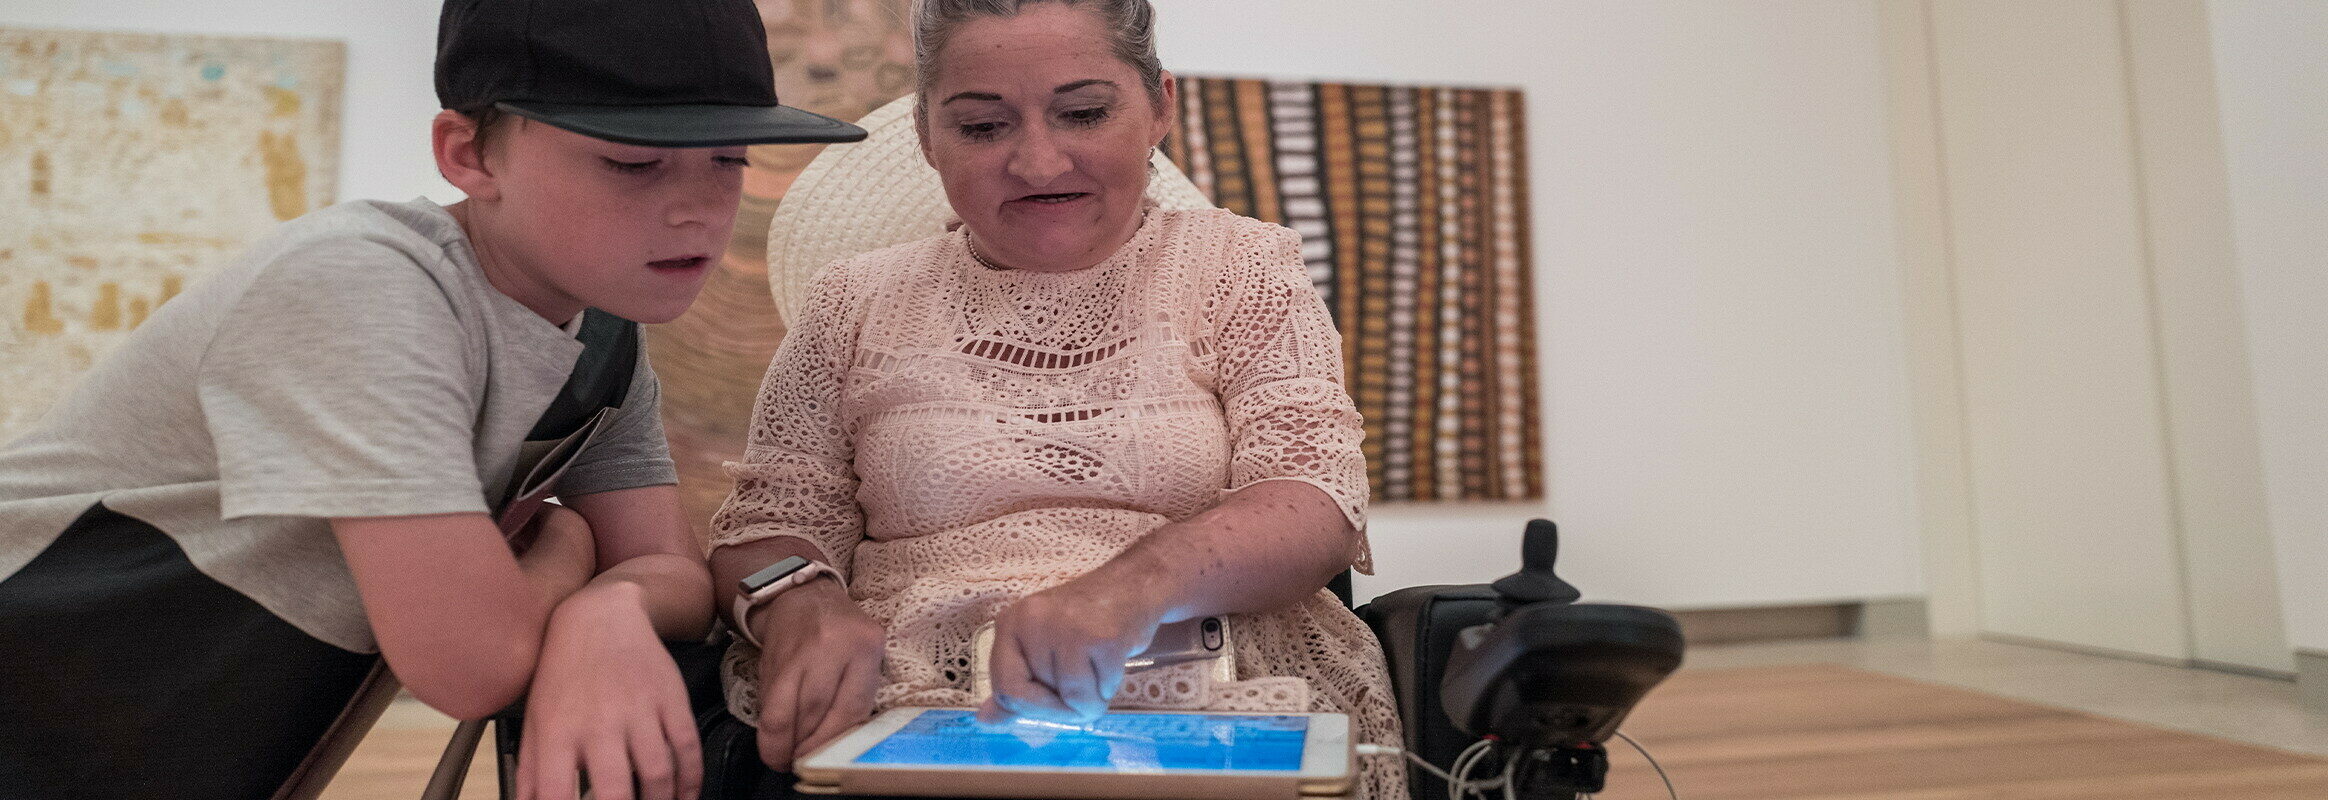 Lisa schrijft op haar iPad terwijl haar zoon leest wat ze schrijft